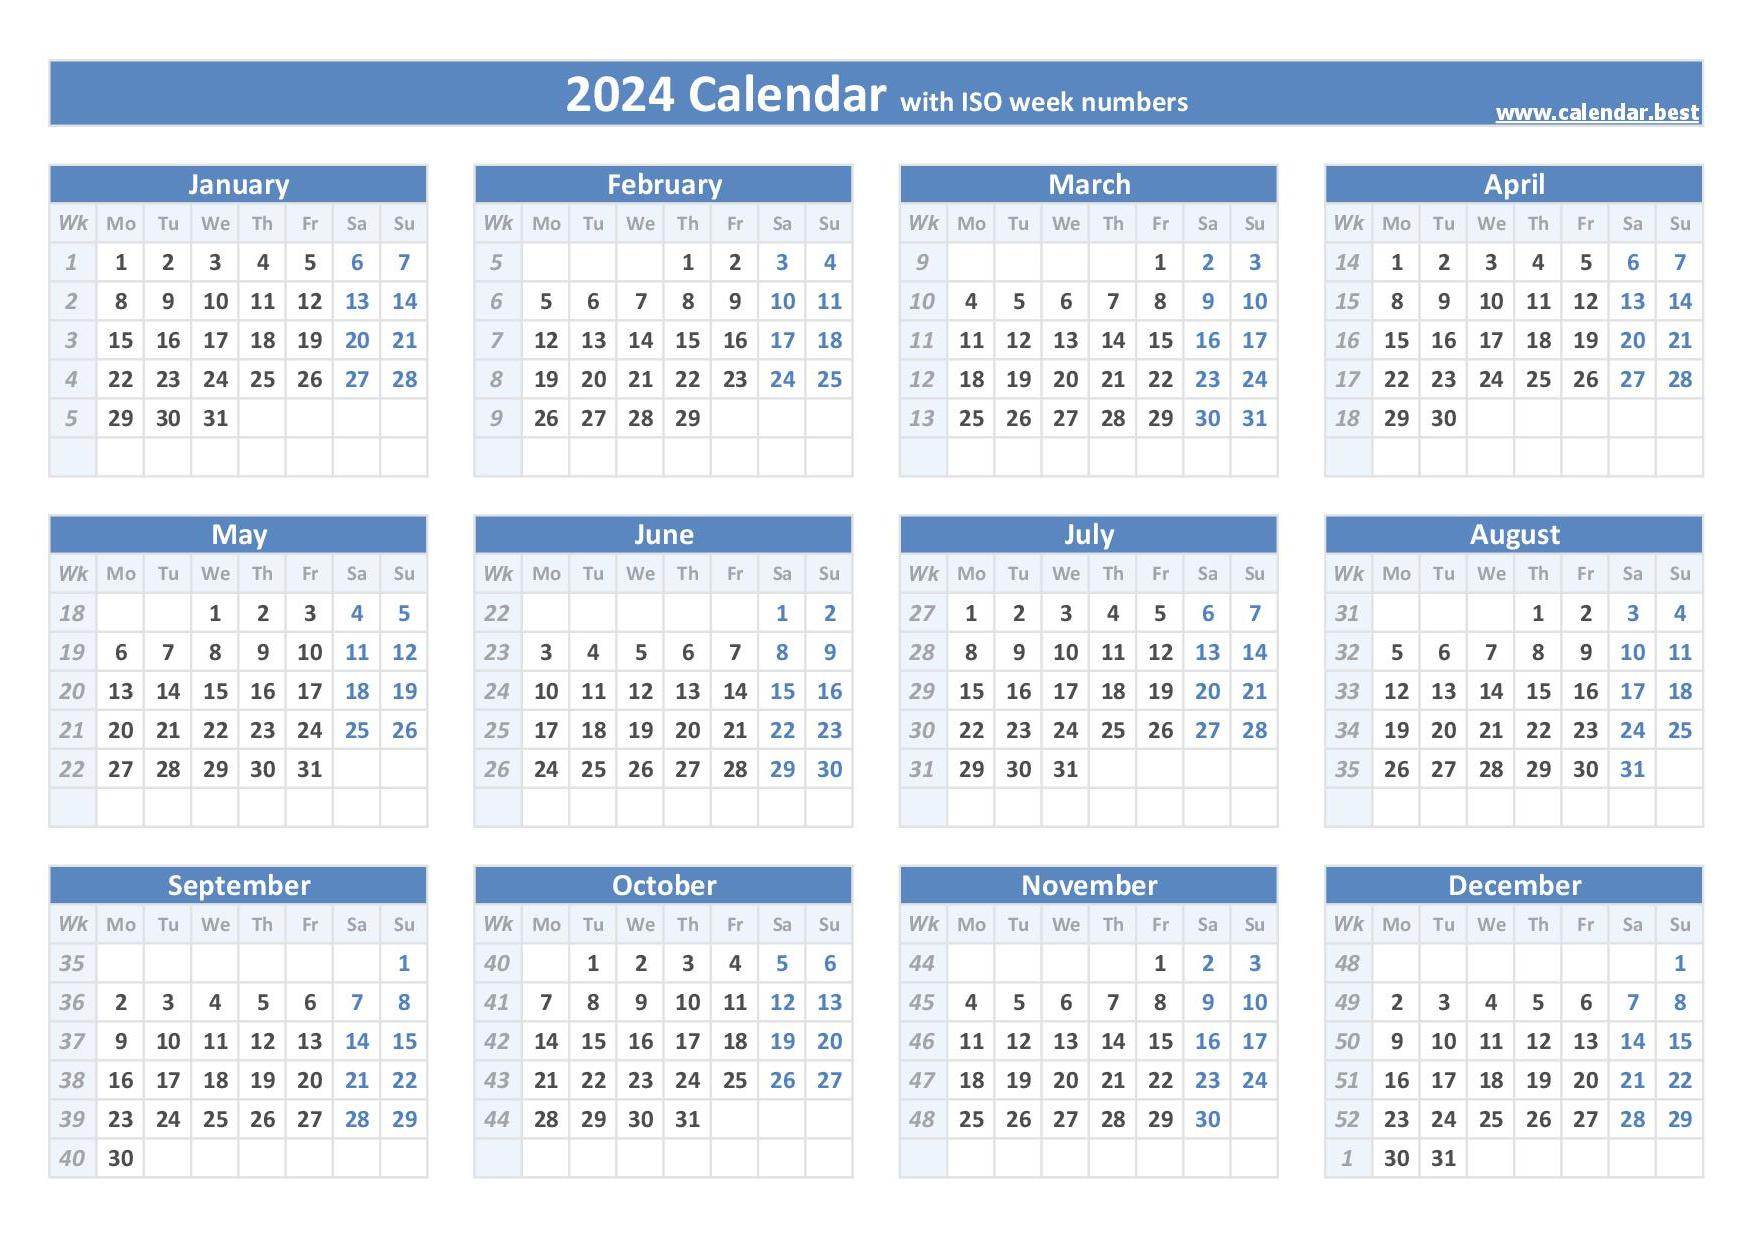 2024 calendar with week numbers (US and ISO week numbers)